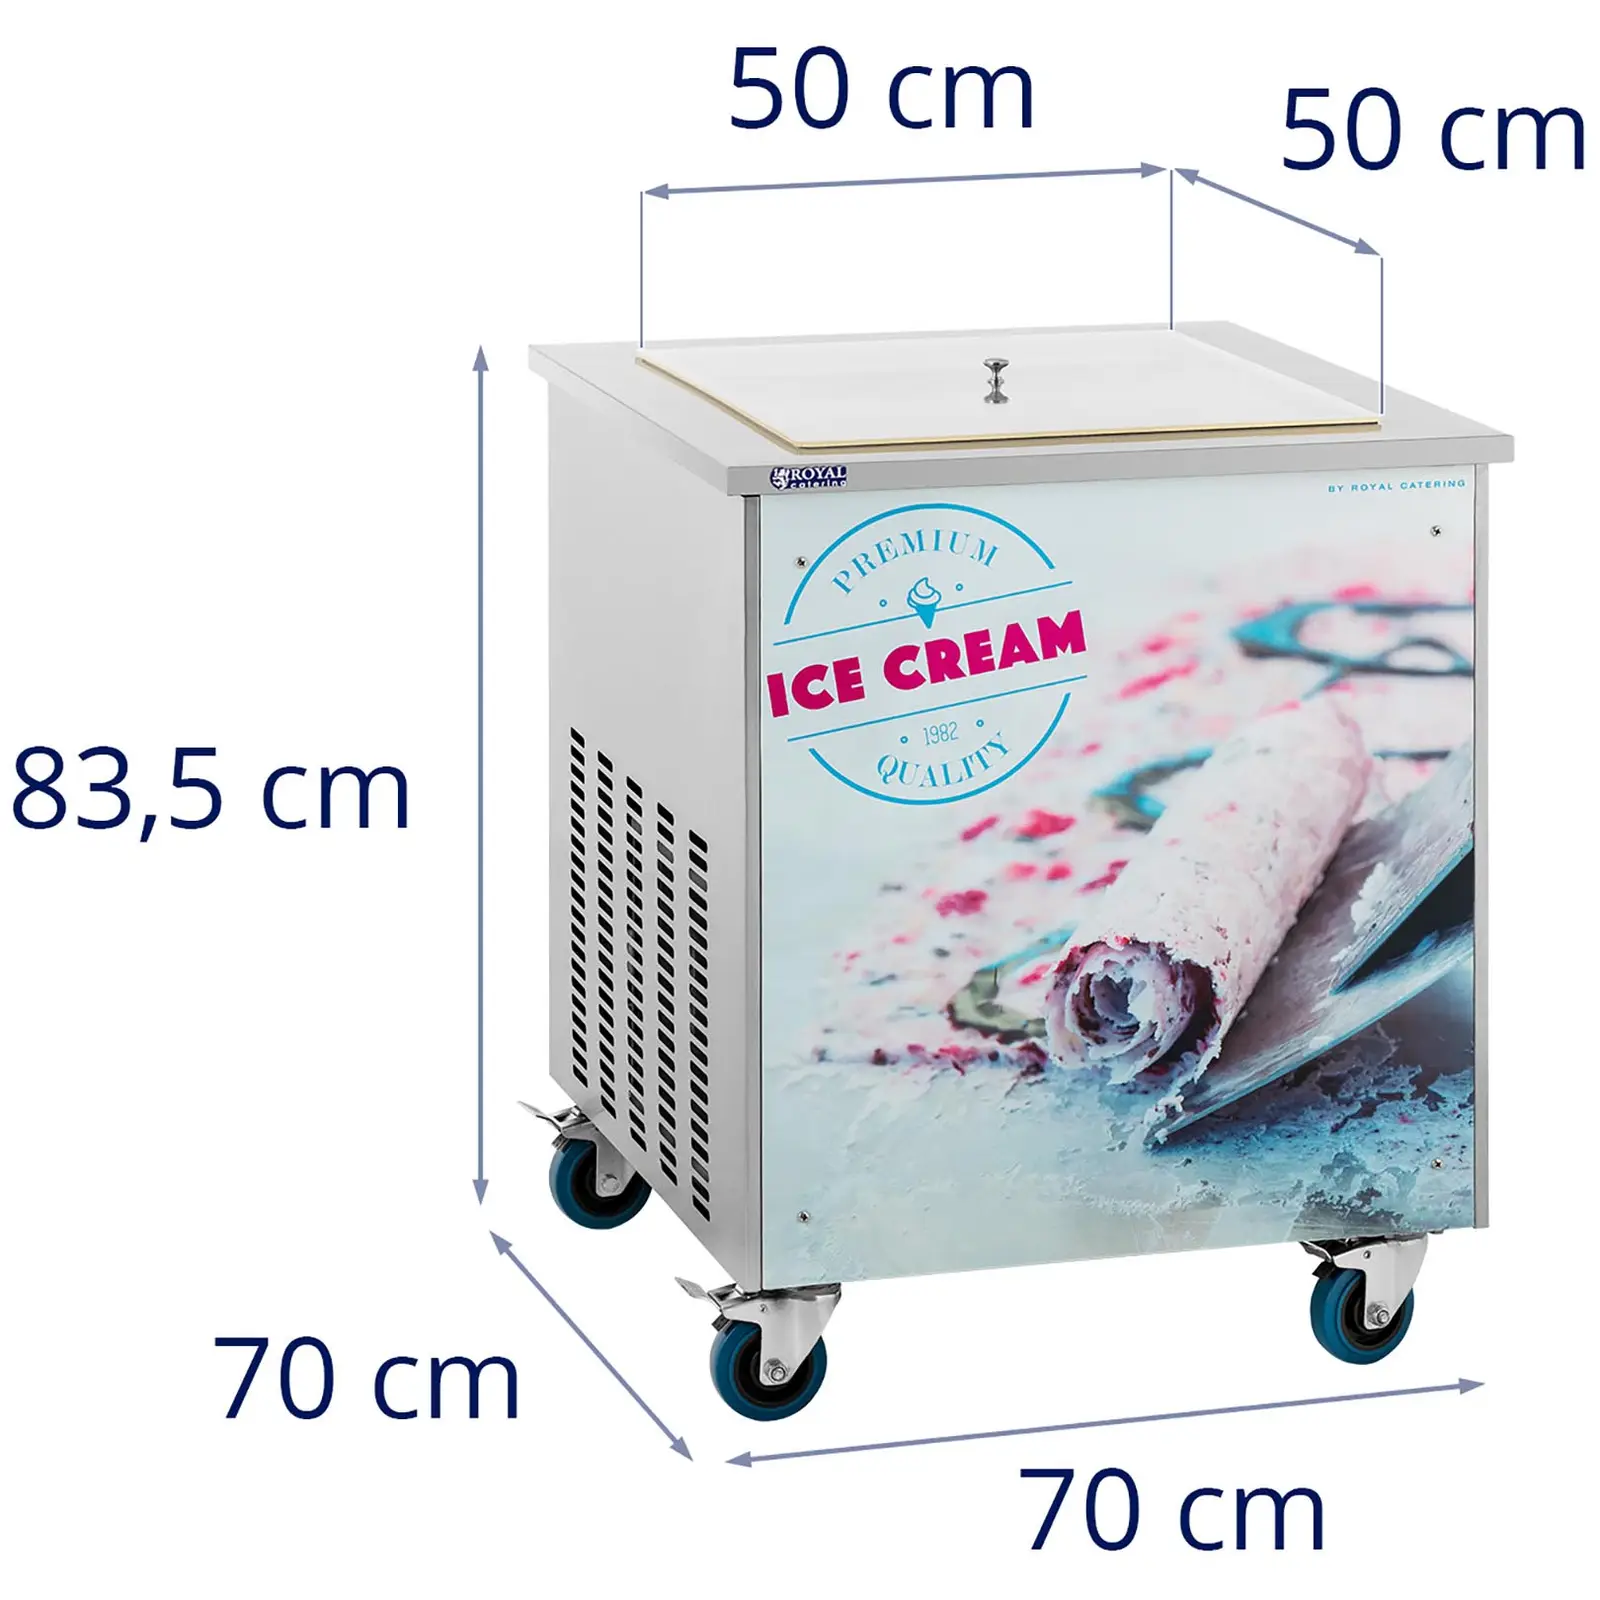 Maszyna do lodów tajskich - 50 x 50 x 2,5 cm - Royal Catering